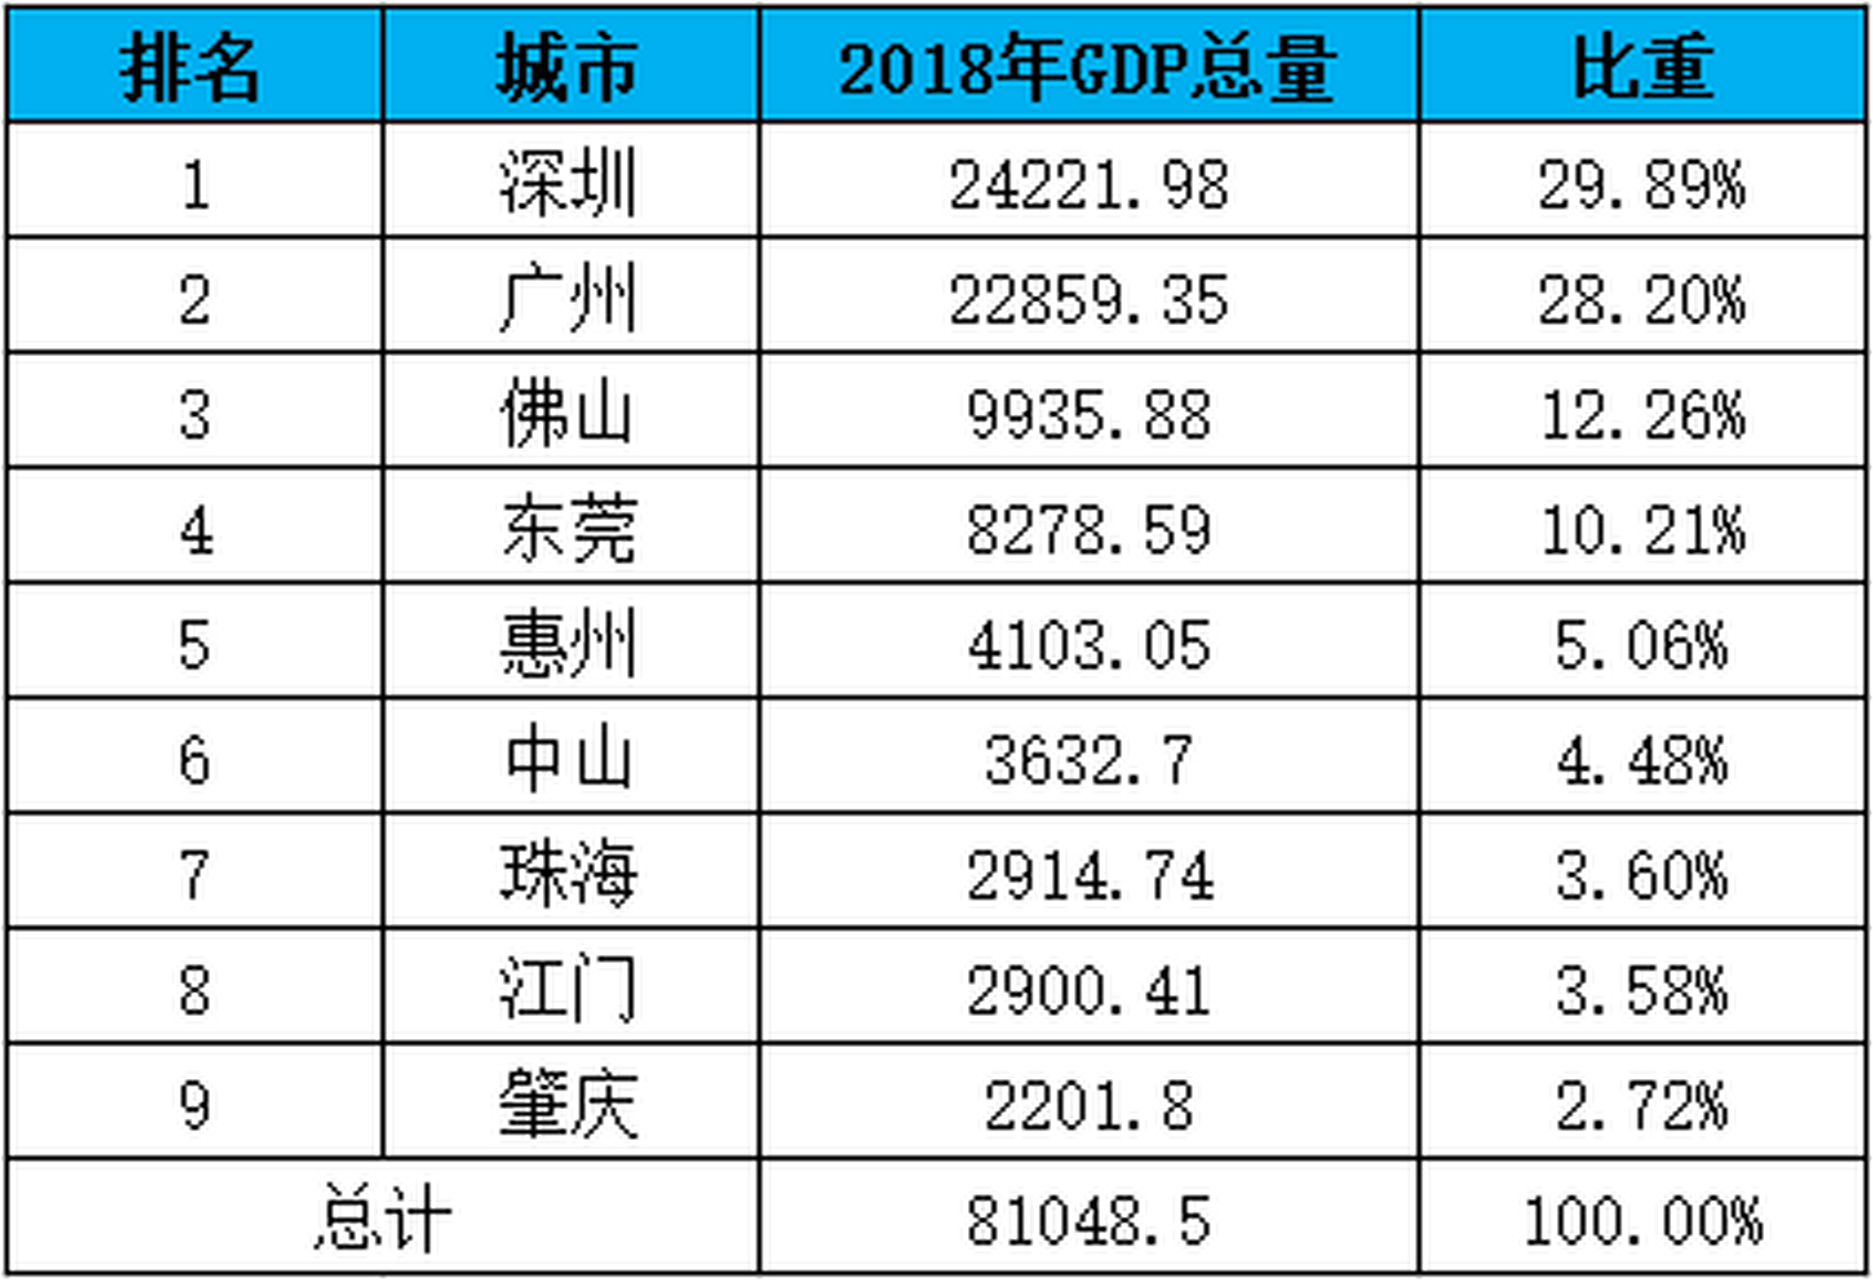 全国第四次经济普查后,中山市gdp缩减了530多亿!